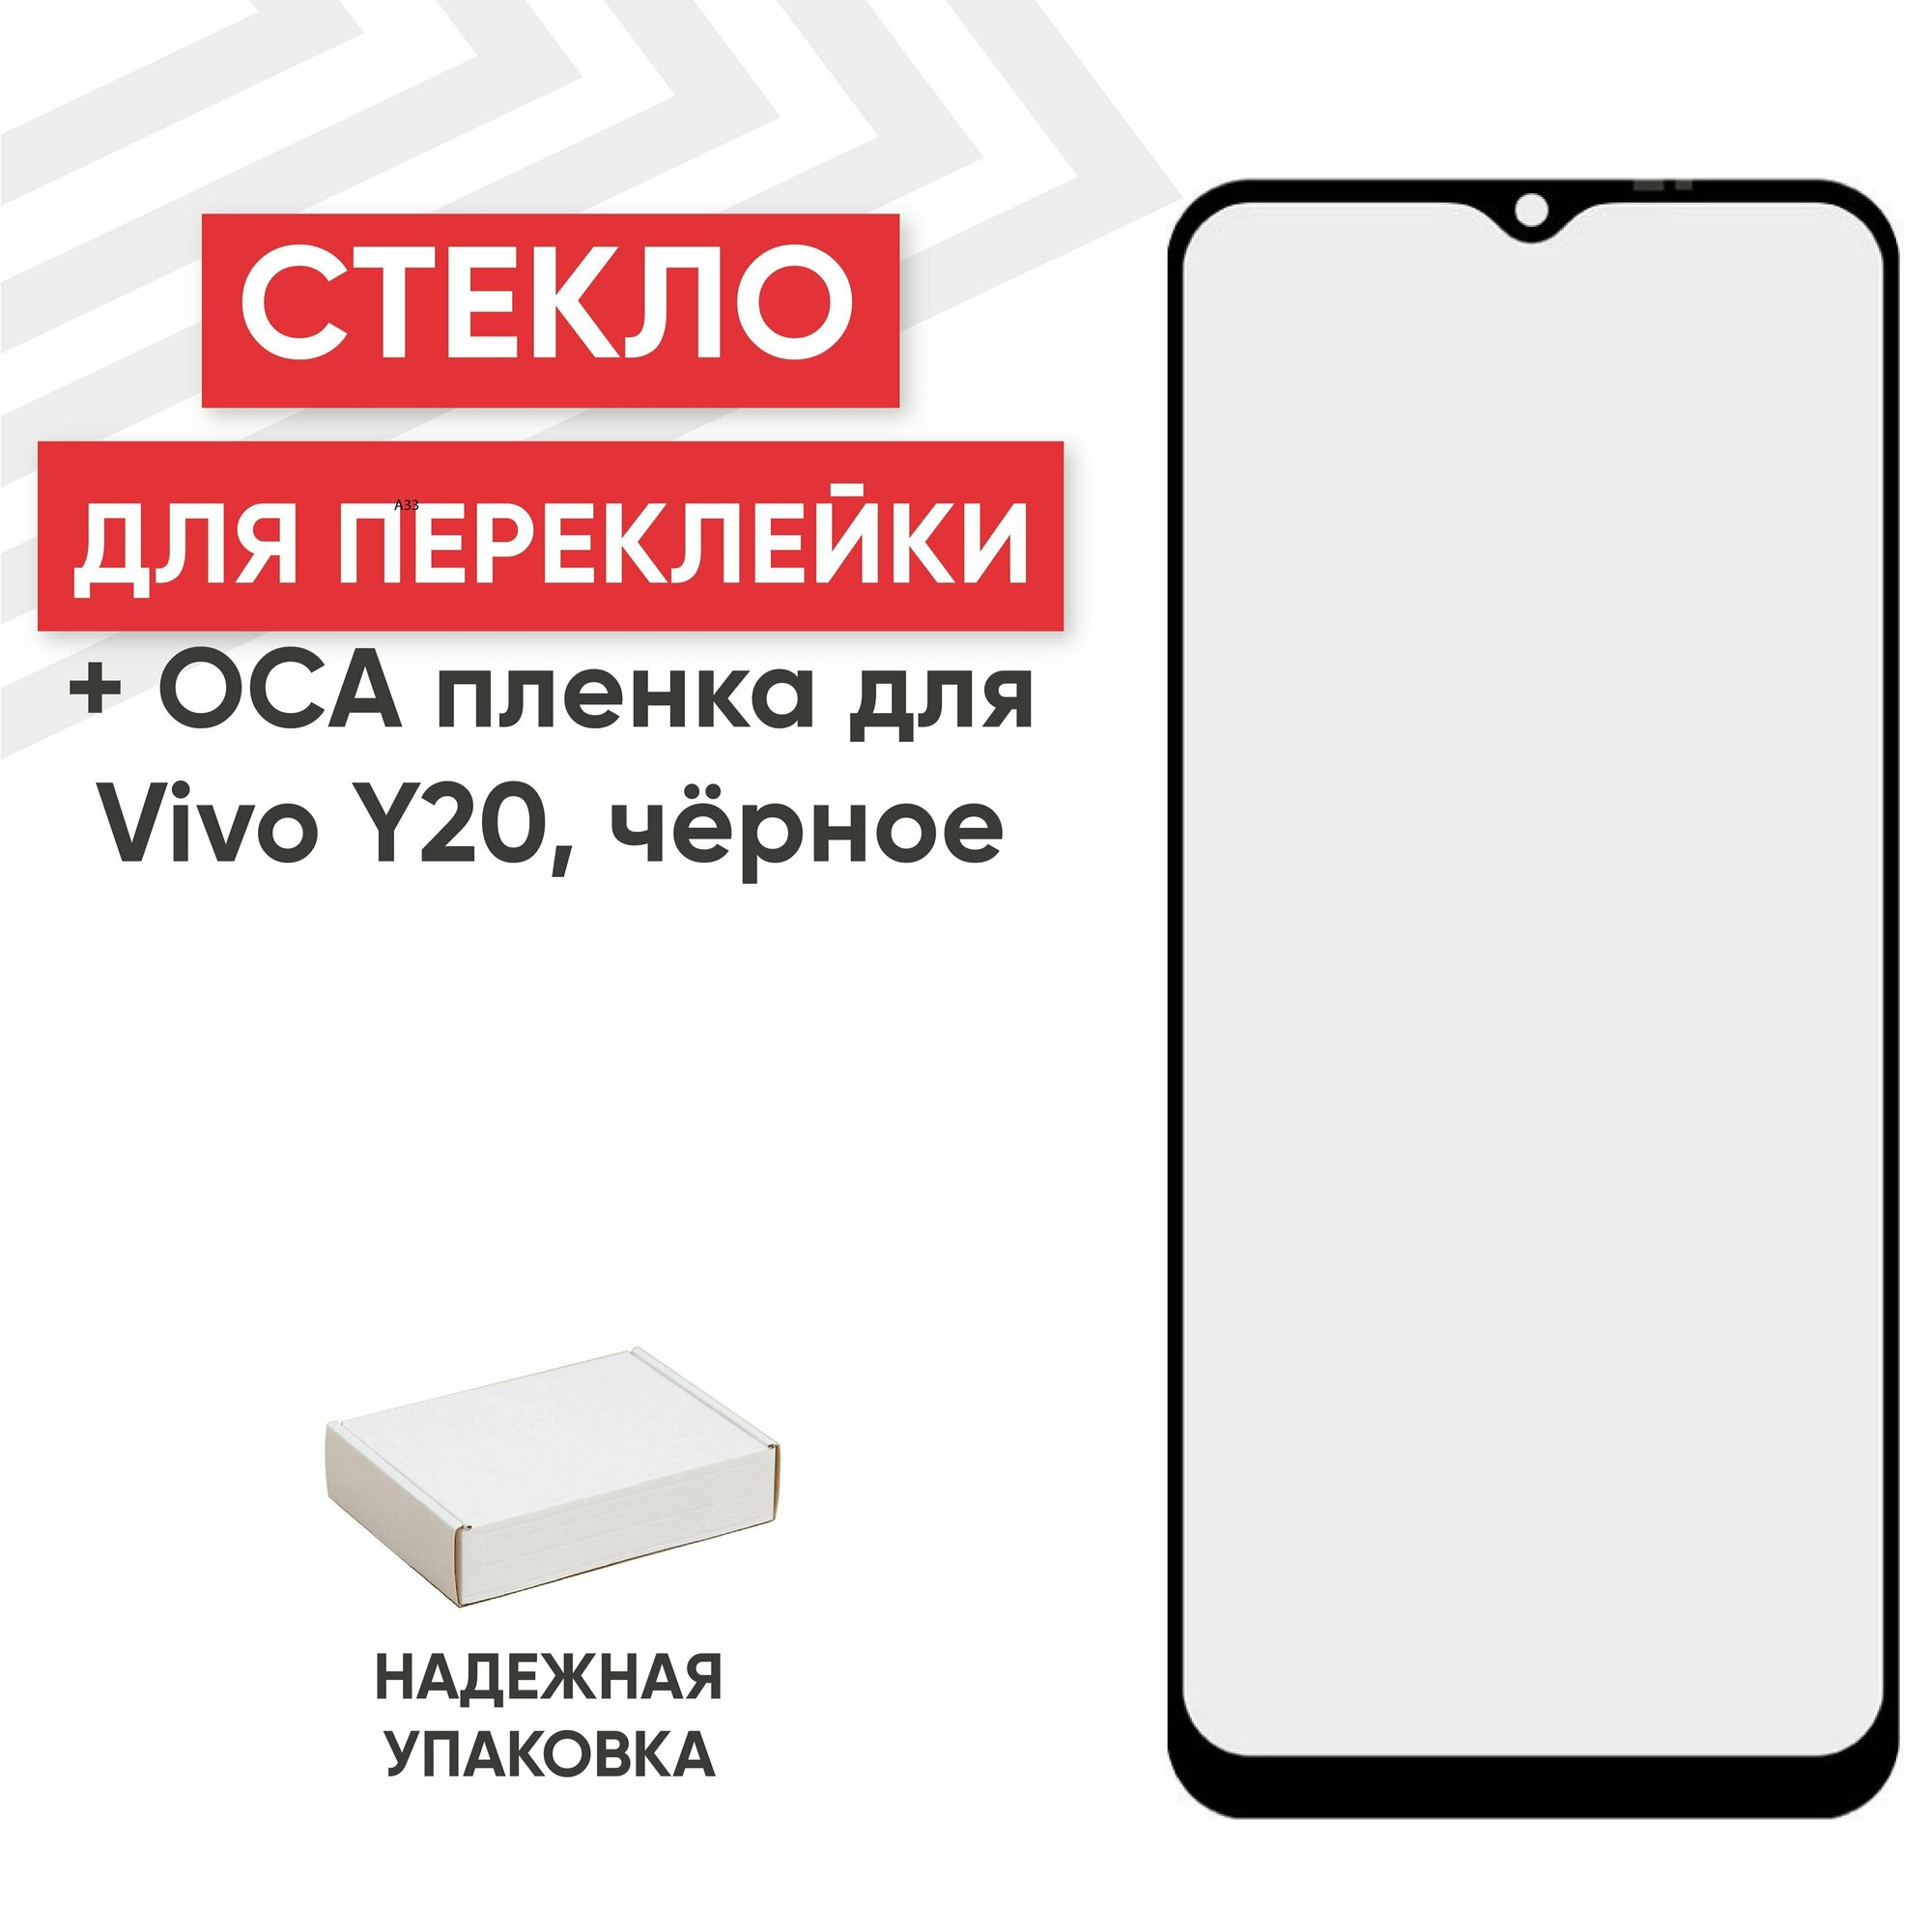 Стекло переклейки дисплея c OCA пленкой для мобильного телефона (смартфона) Vivo Y20, черное